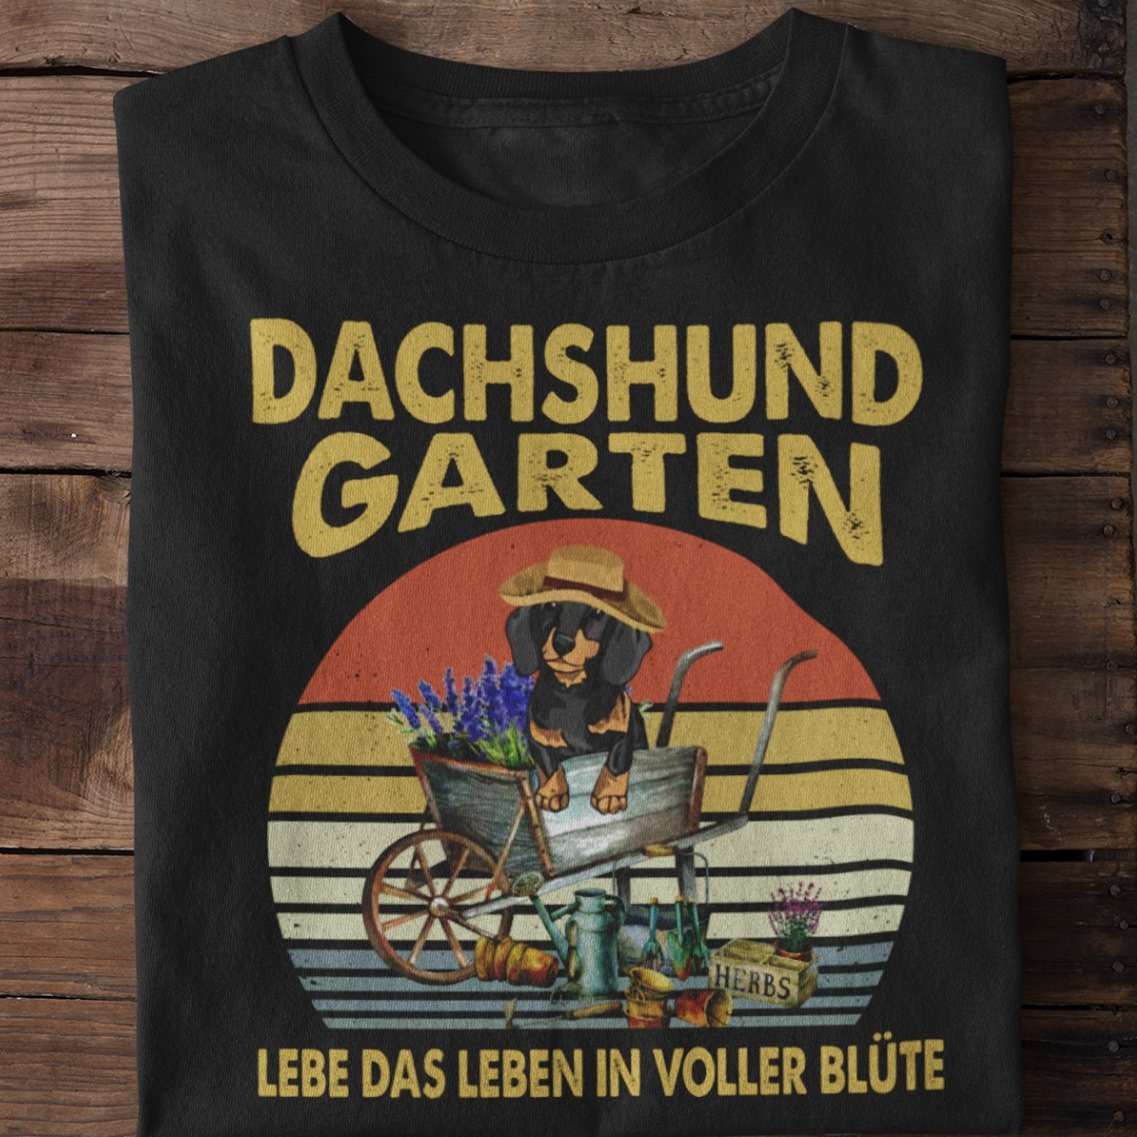 Dachshund garten - Dachshund dog and gardening, love gardening people